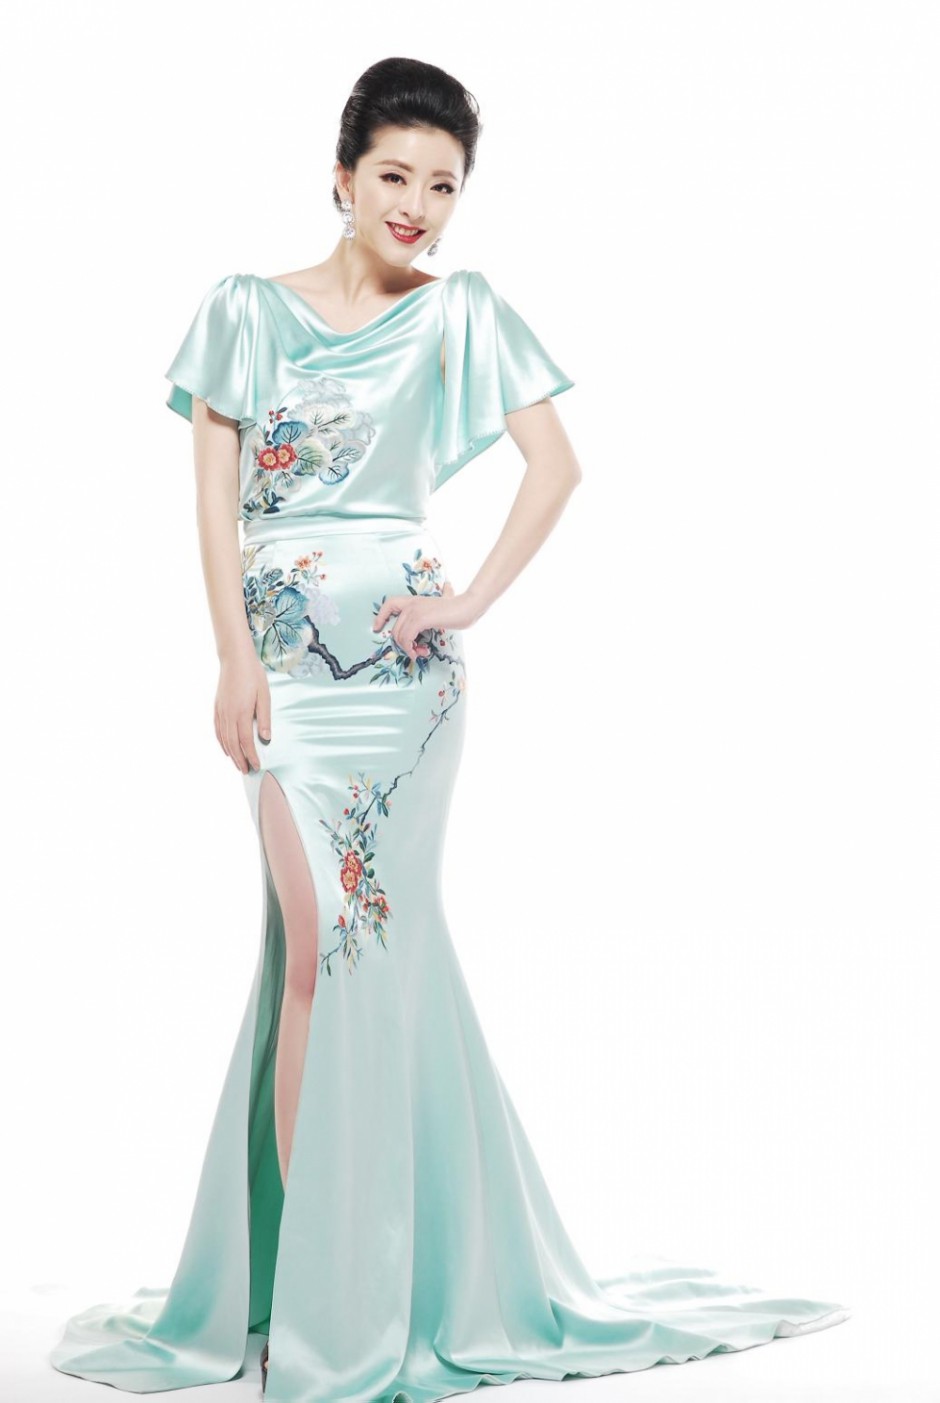 黄小蕾漂亮身材大胆旗袍写真(5)(点击浏览下一张趣图)